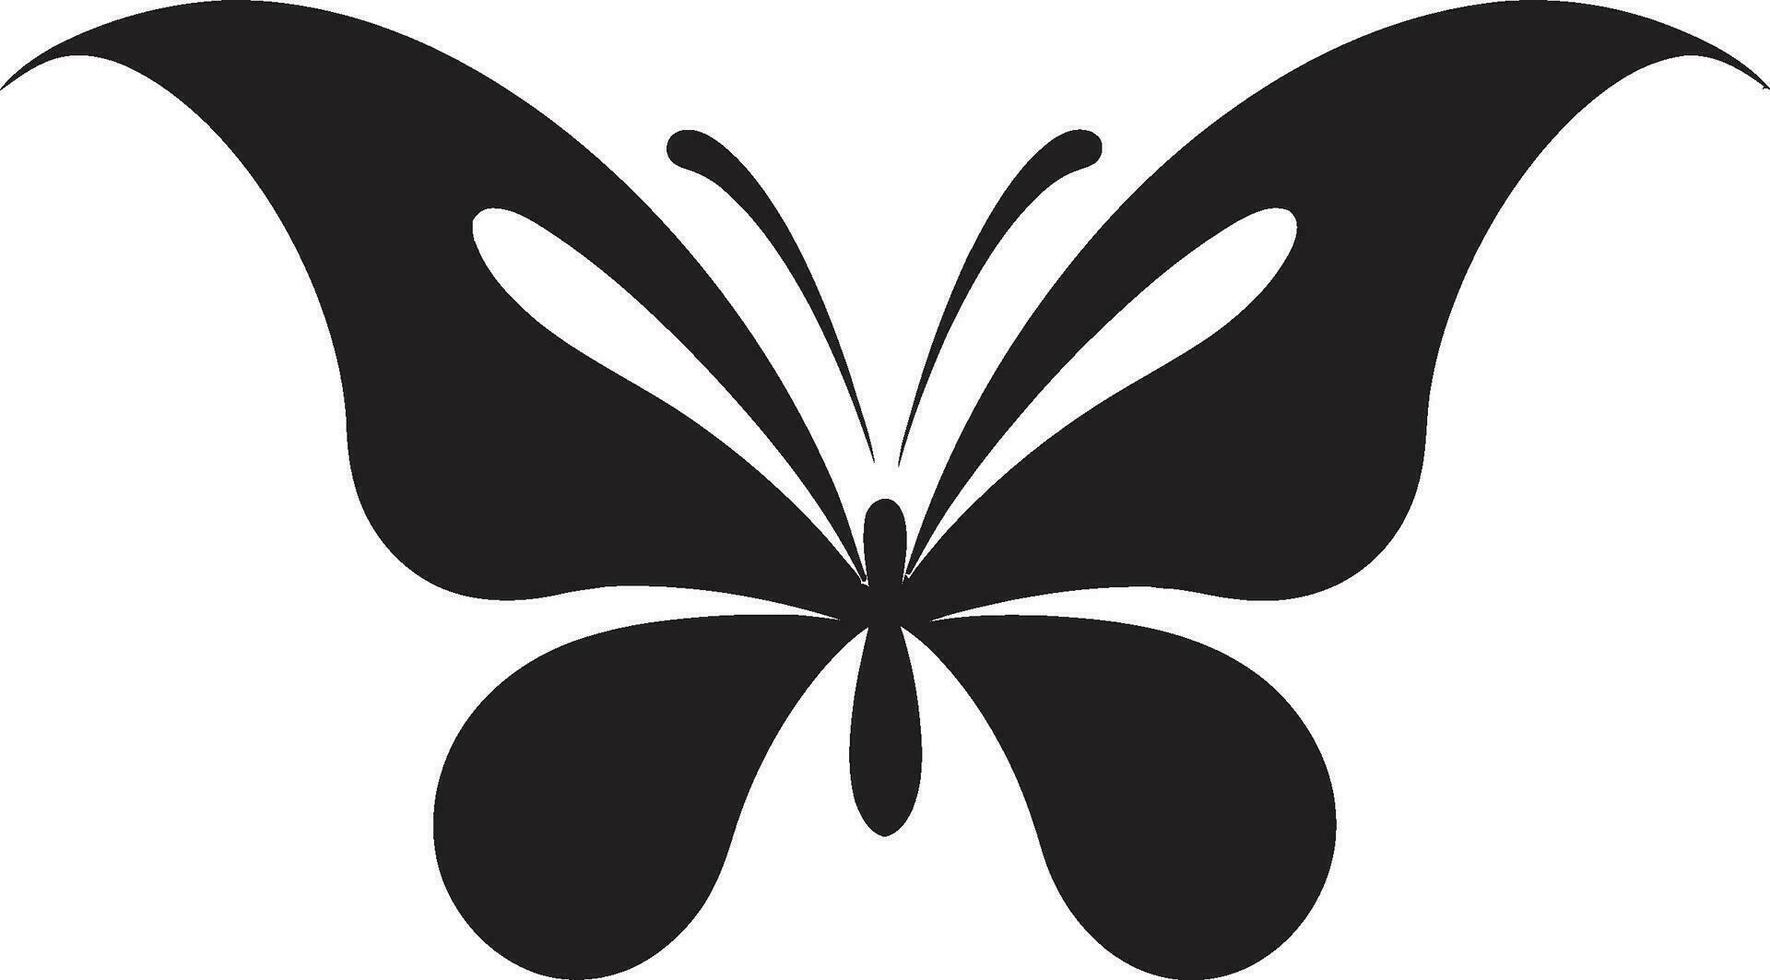 Eleganz im Bewegung schwarz Vektor Logo geflügelt Majestät schwarz Schmetterling Symbol